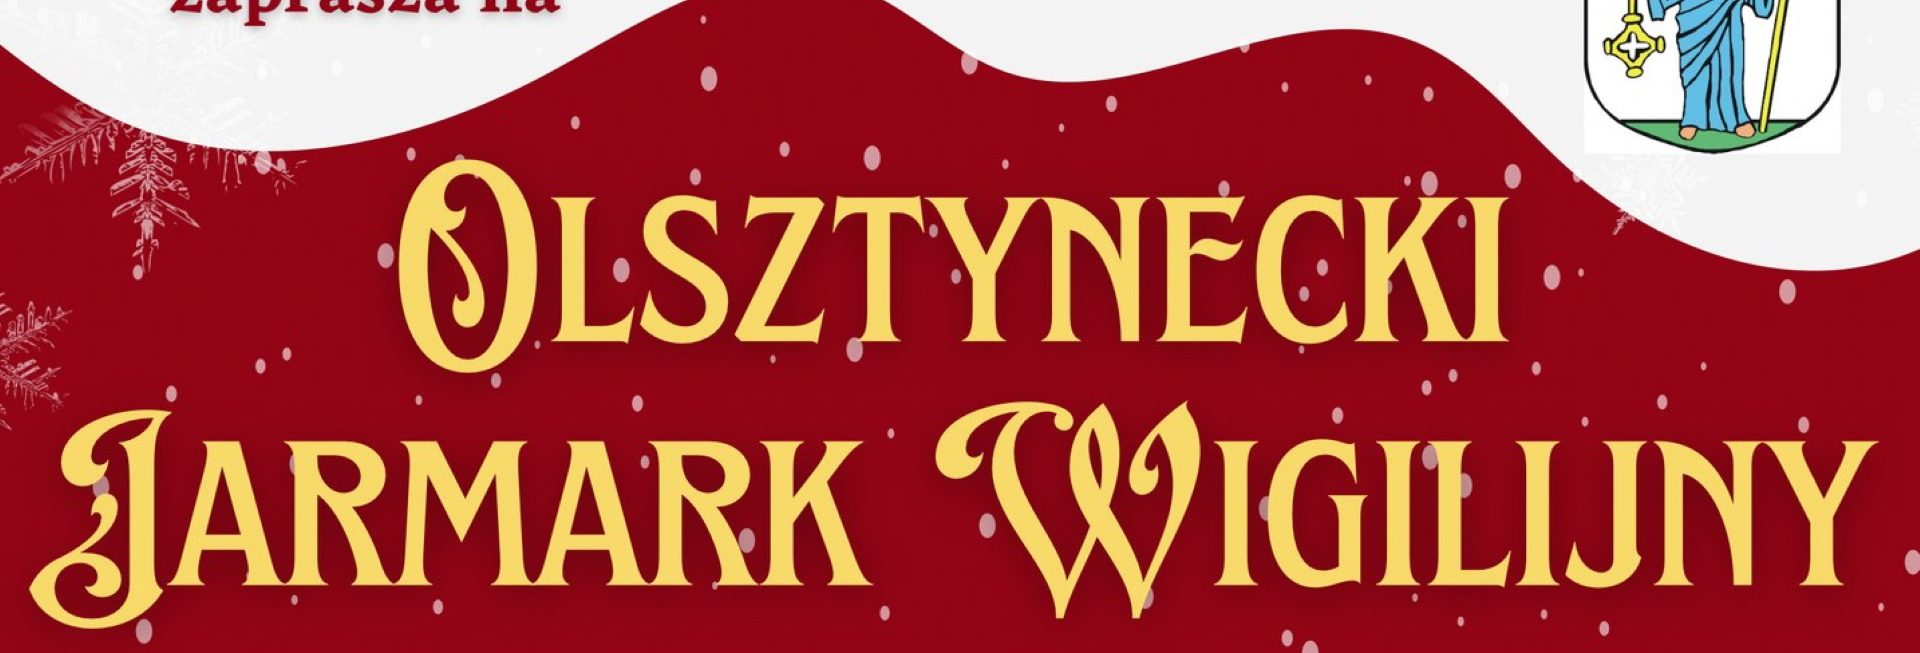 Plakat zapraszający w niedzielę 17 grudnia 2023 r. do Olsztynka na coroczny Olsztynecki Jarmark Wigilijny Olsztynek 2023.